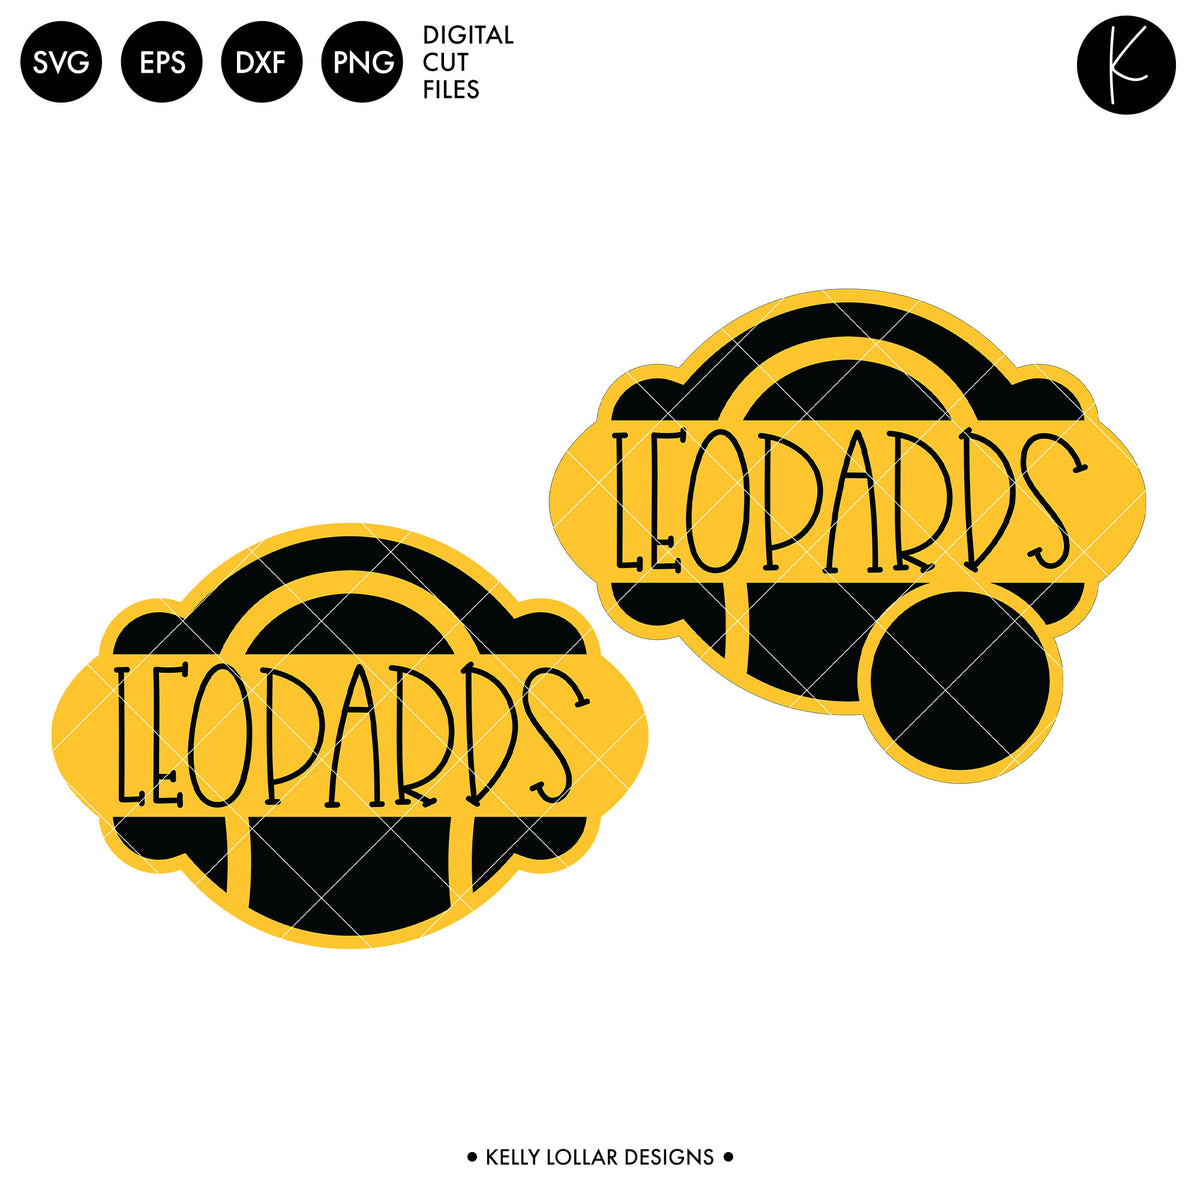 Leopards Tennis Bundle | SVG DXF EPS PNG Cut Files